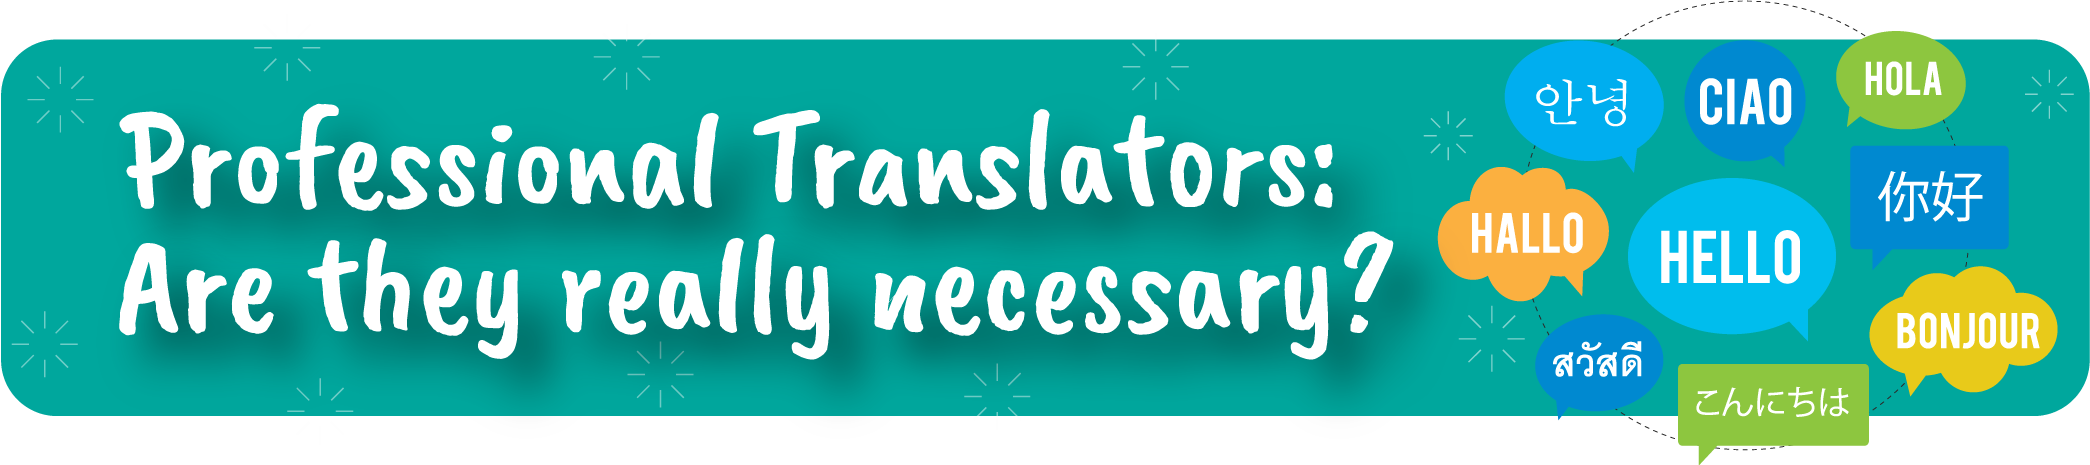 Professional Translators